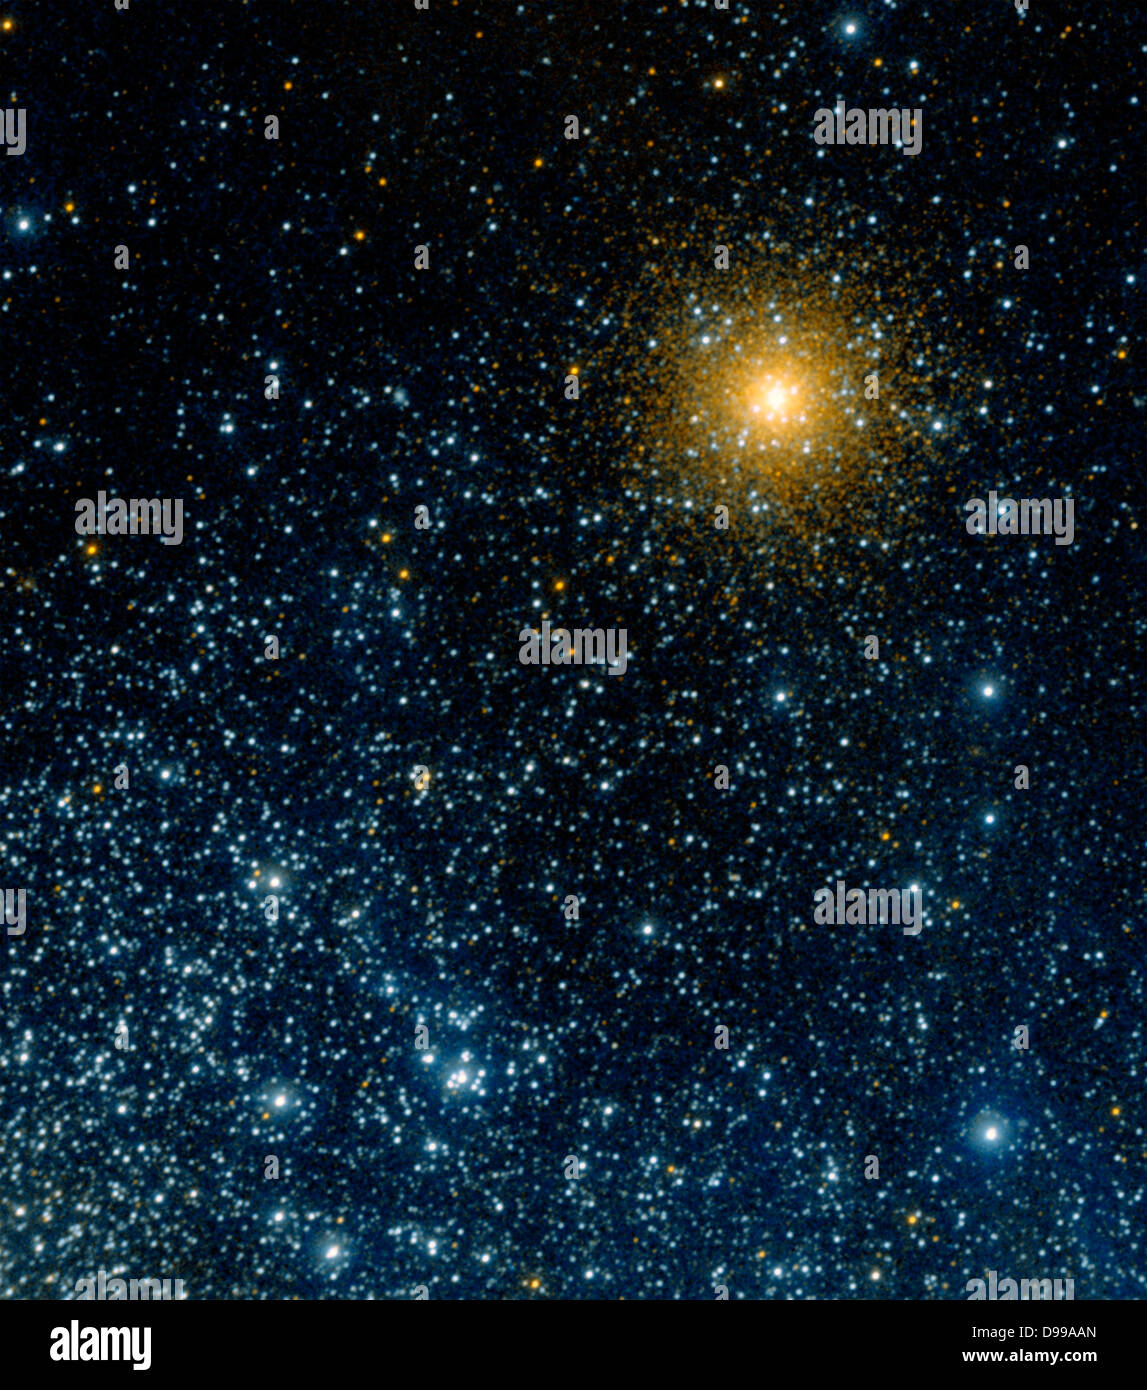 Uv-Augen des Galaxy Evolution Explorer haben einen kugelförmigen Sternhaufen, genannt NGC 362 erfasst, in unserer Milchstraße. In dieses neue Bild der Cluster wird neben Stars aus einer weit entfernten benachbarten Galaxie, wie die Kleine Magellansche Wolke bekannt. Stockfoto